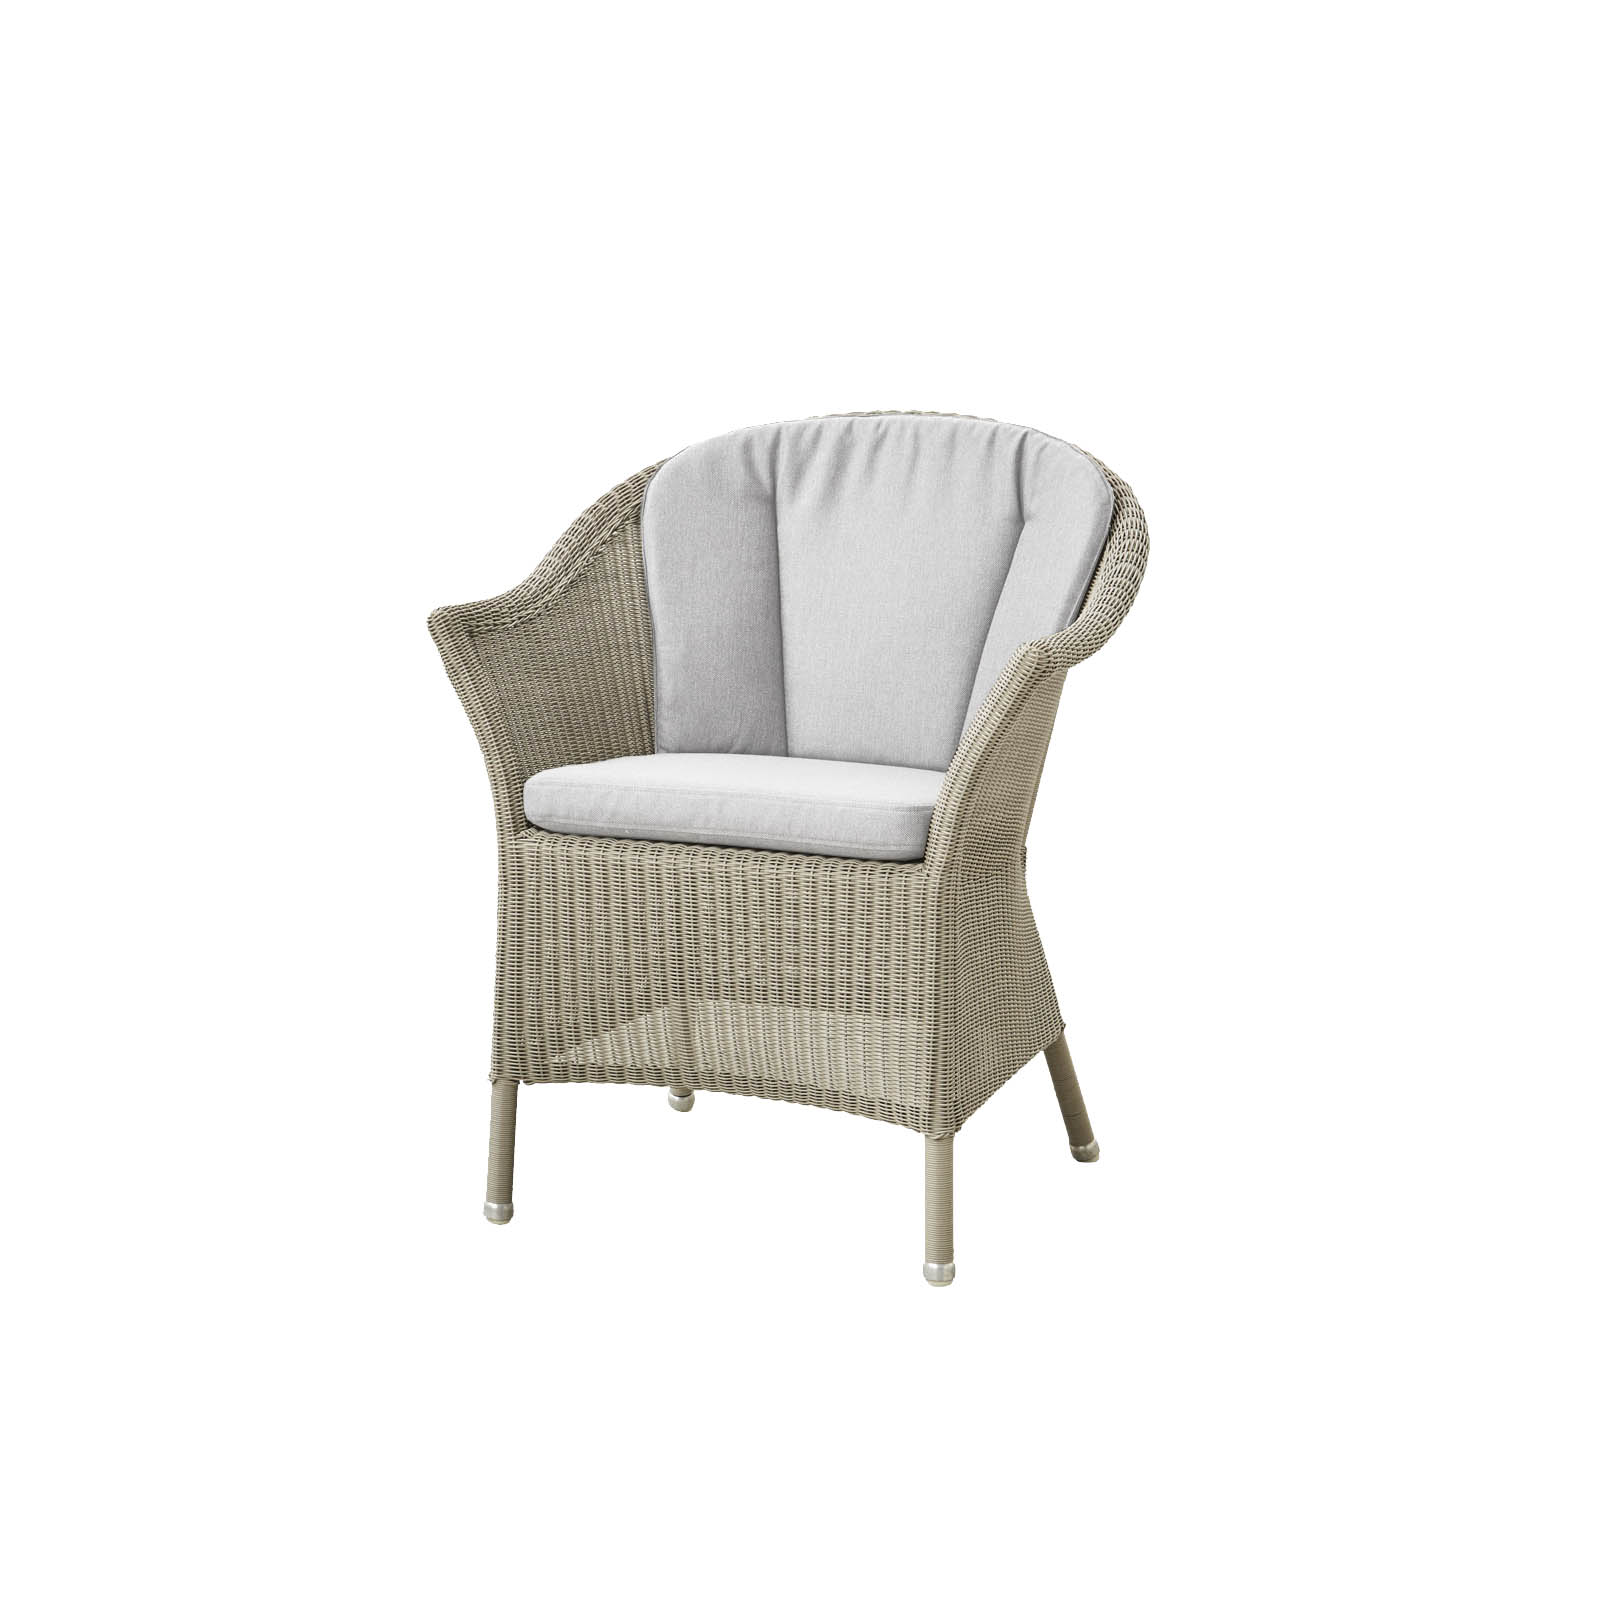 Lansing Stuhl aus Cane-line Weave in Taupe mit Kissen aus Cane-line Natté in Light Grey und Kissen aus Cane-line Natté in Light Grey